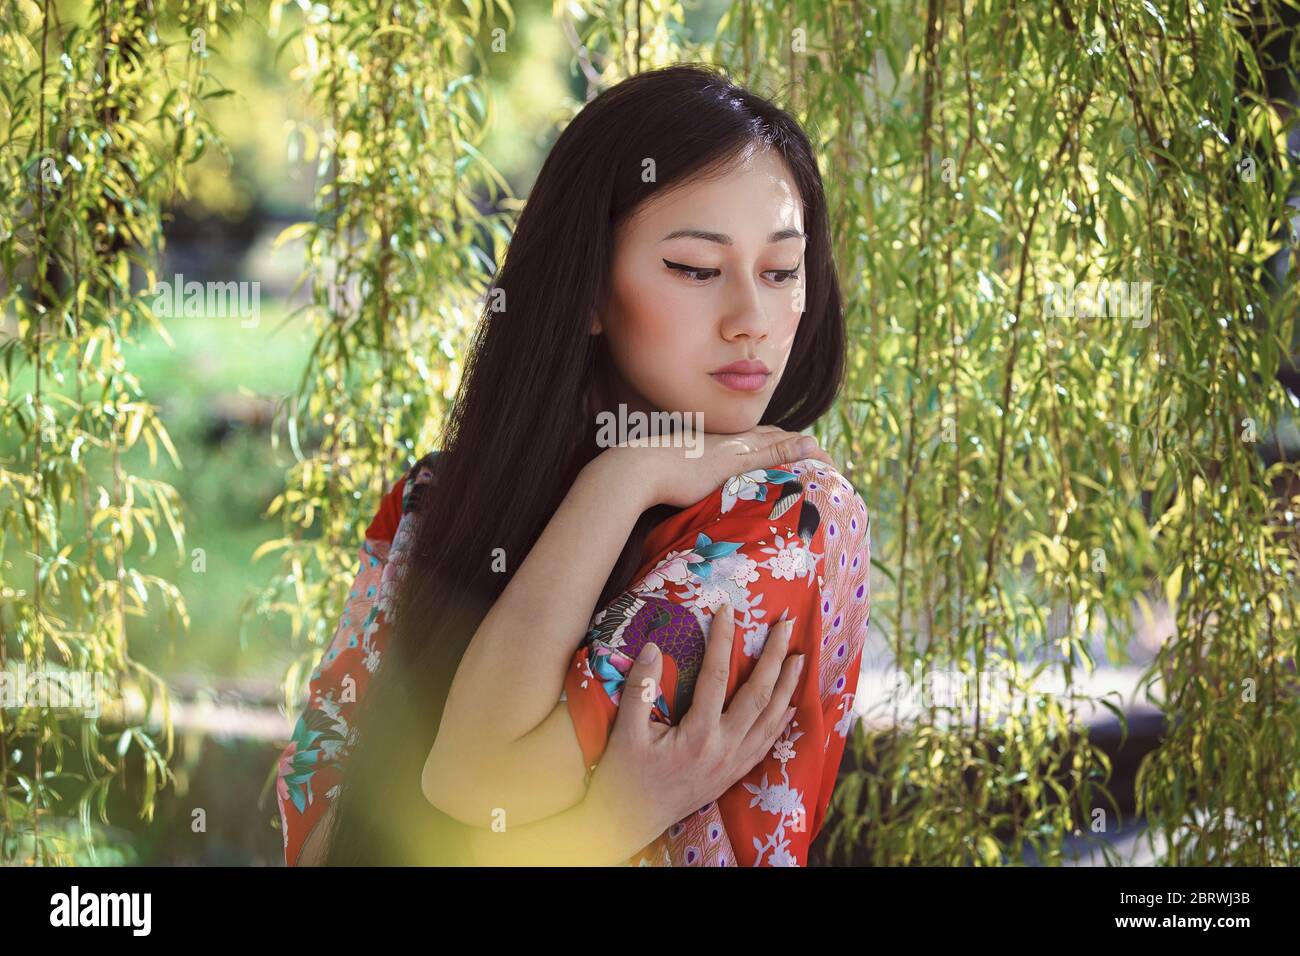 Girl Beautiful, Free Stock Photo, Profile of a beautiful Chinese girl